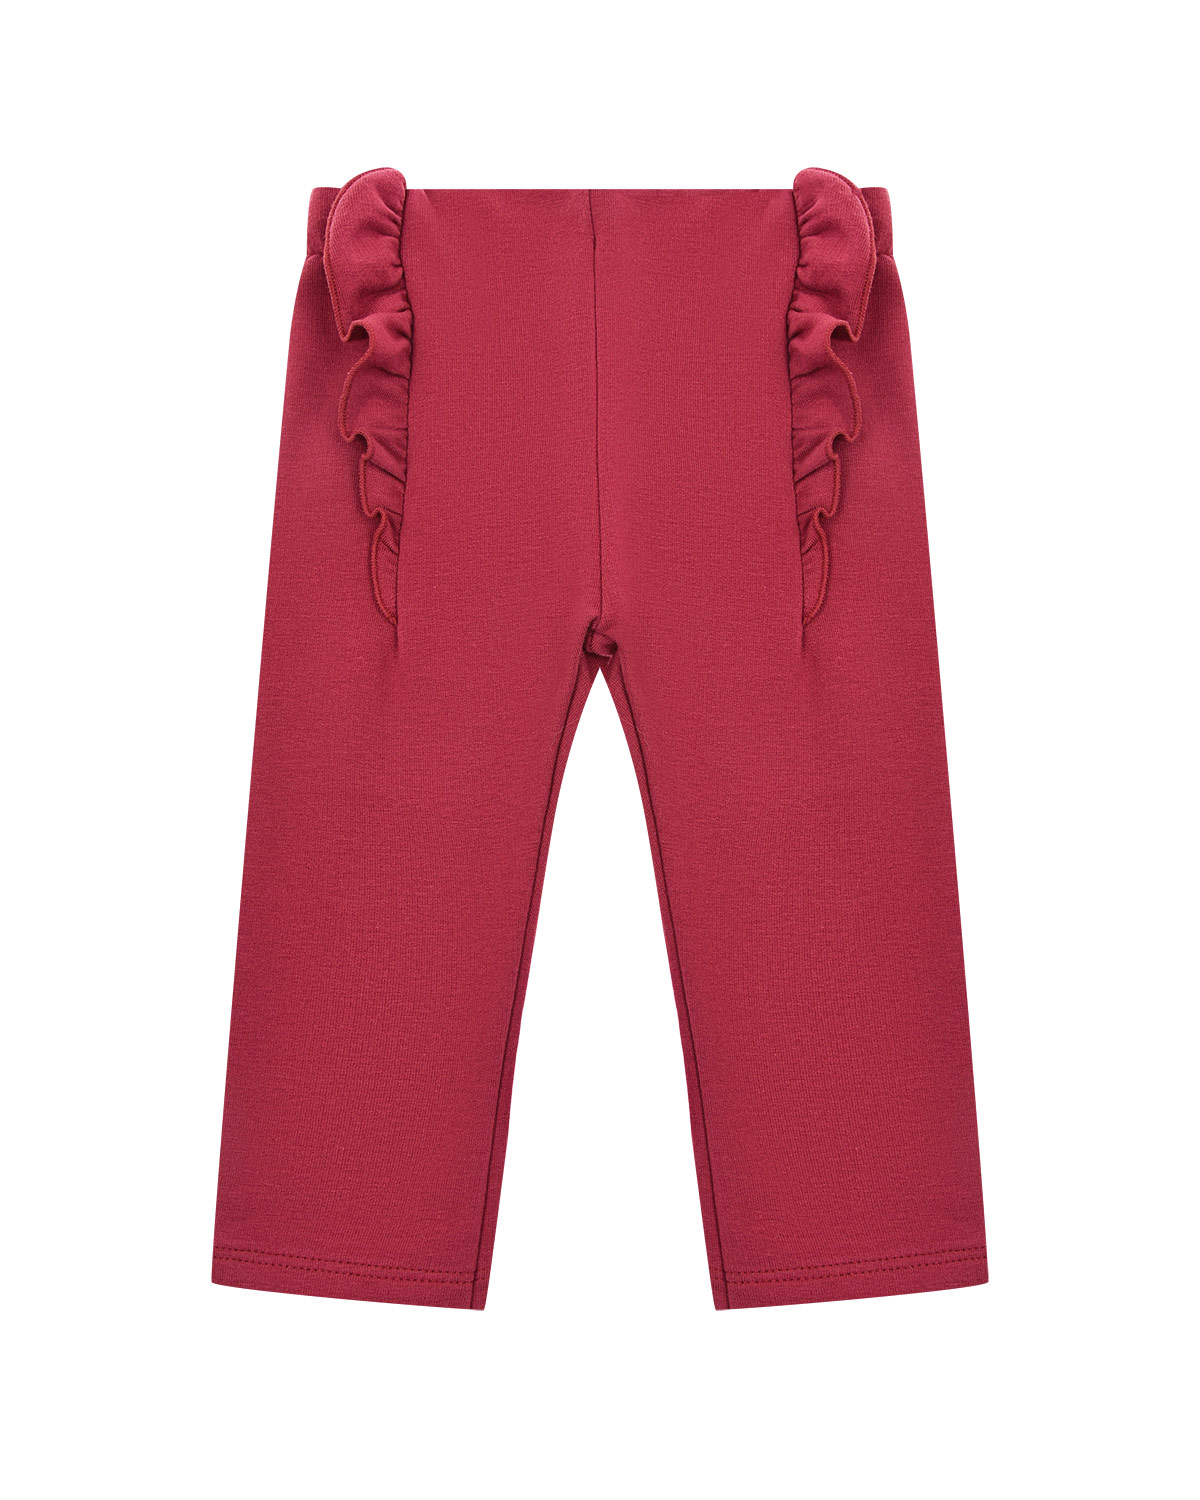 Бордовые брюки с рюшами Sanetta fiftyseven детские